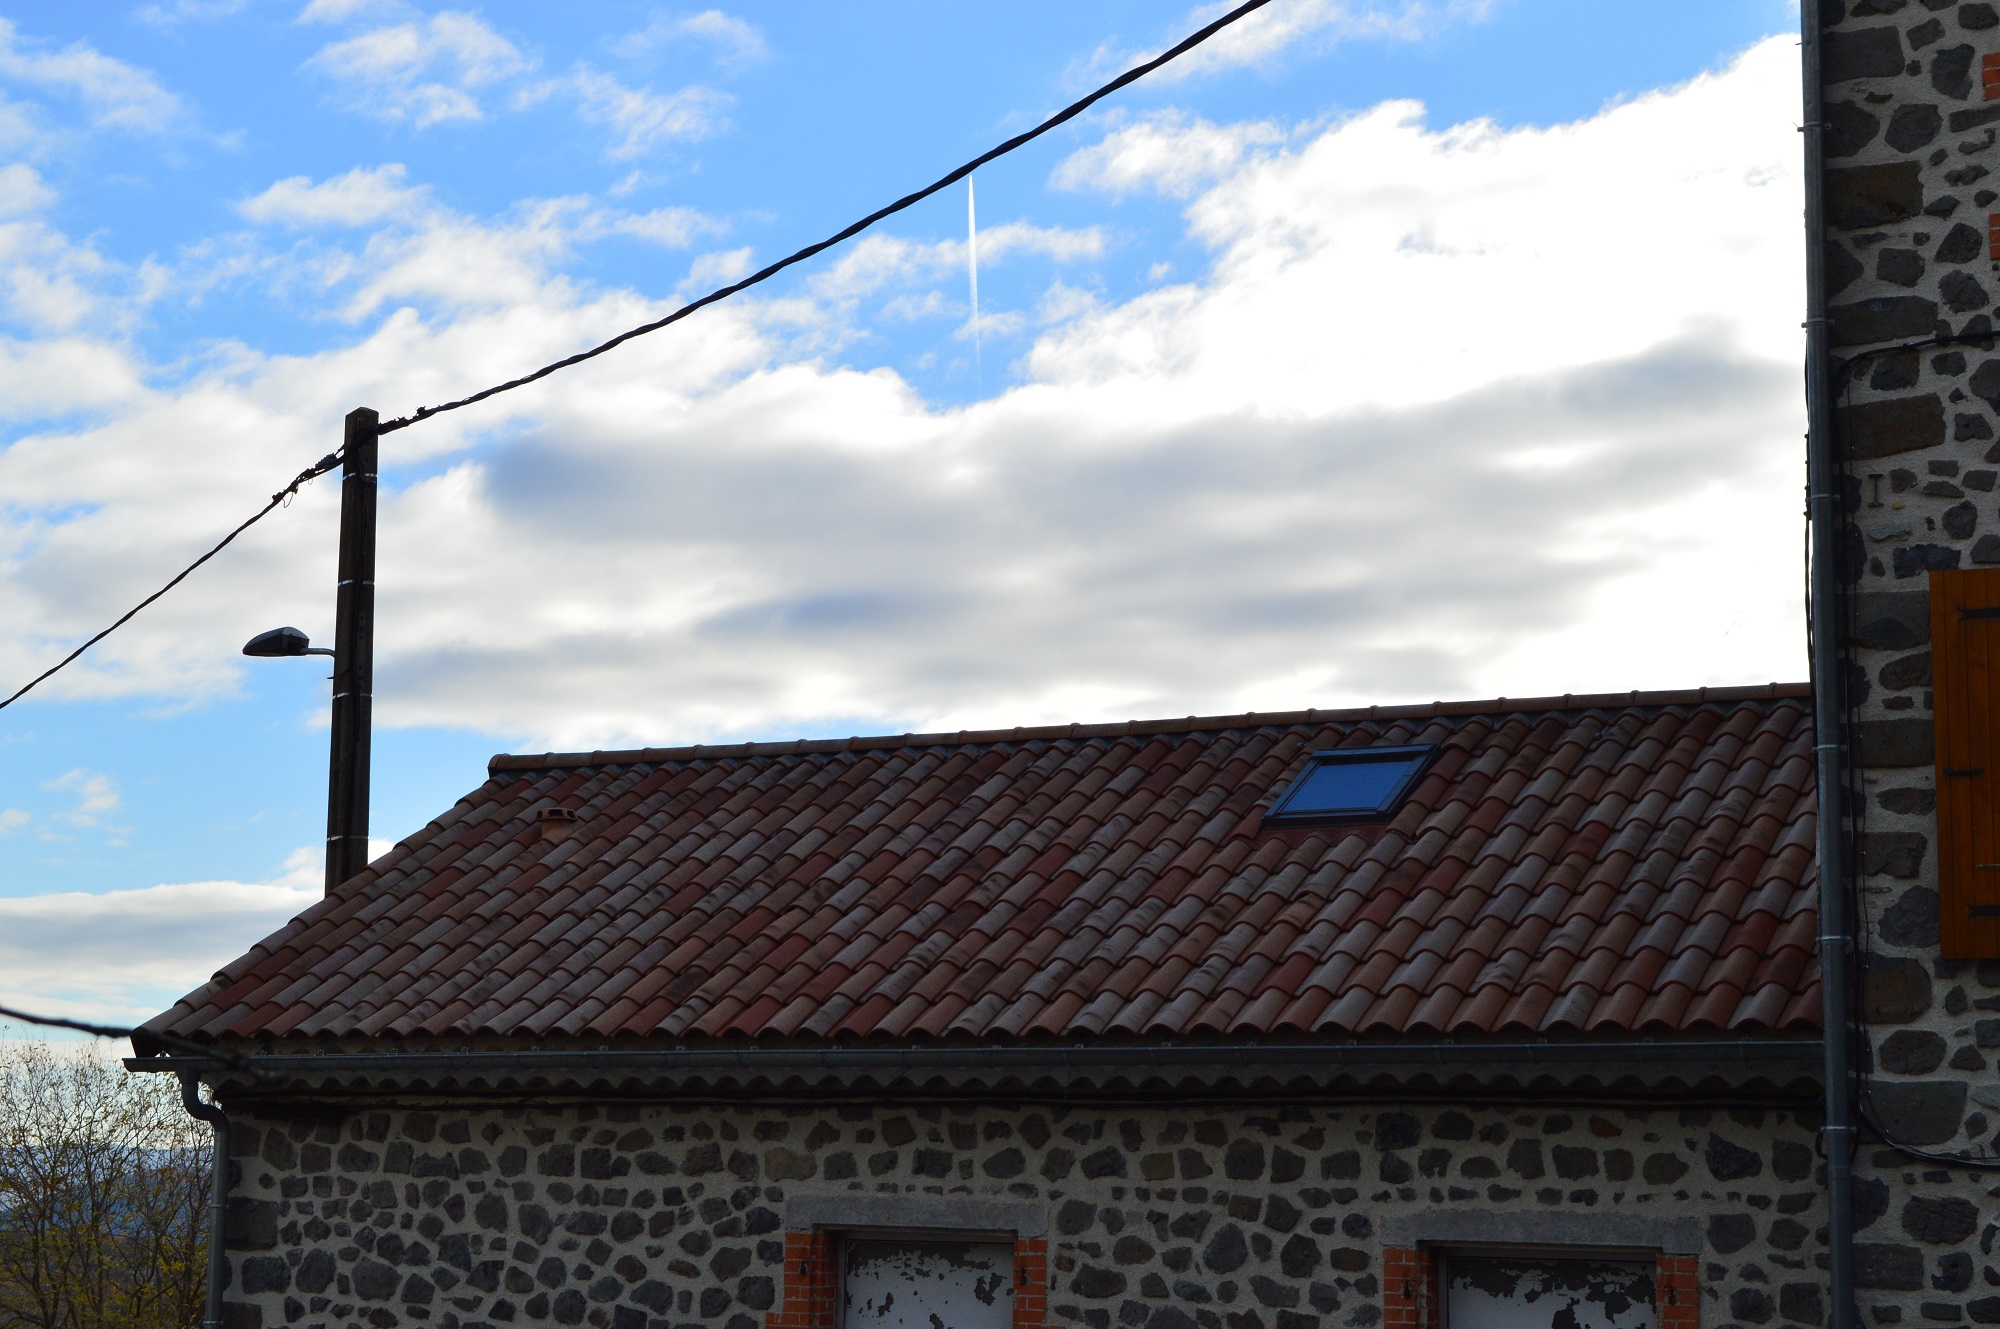 Réfection de la toiture de l'école de Saint Pons en tuiles mécaniques